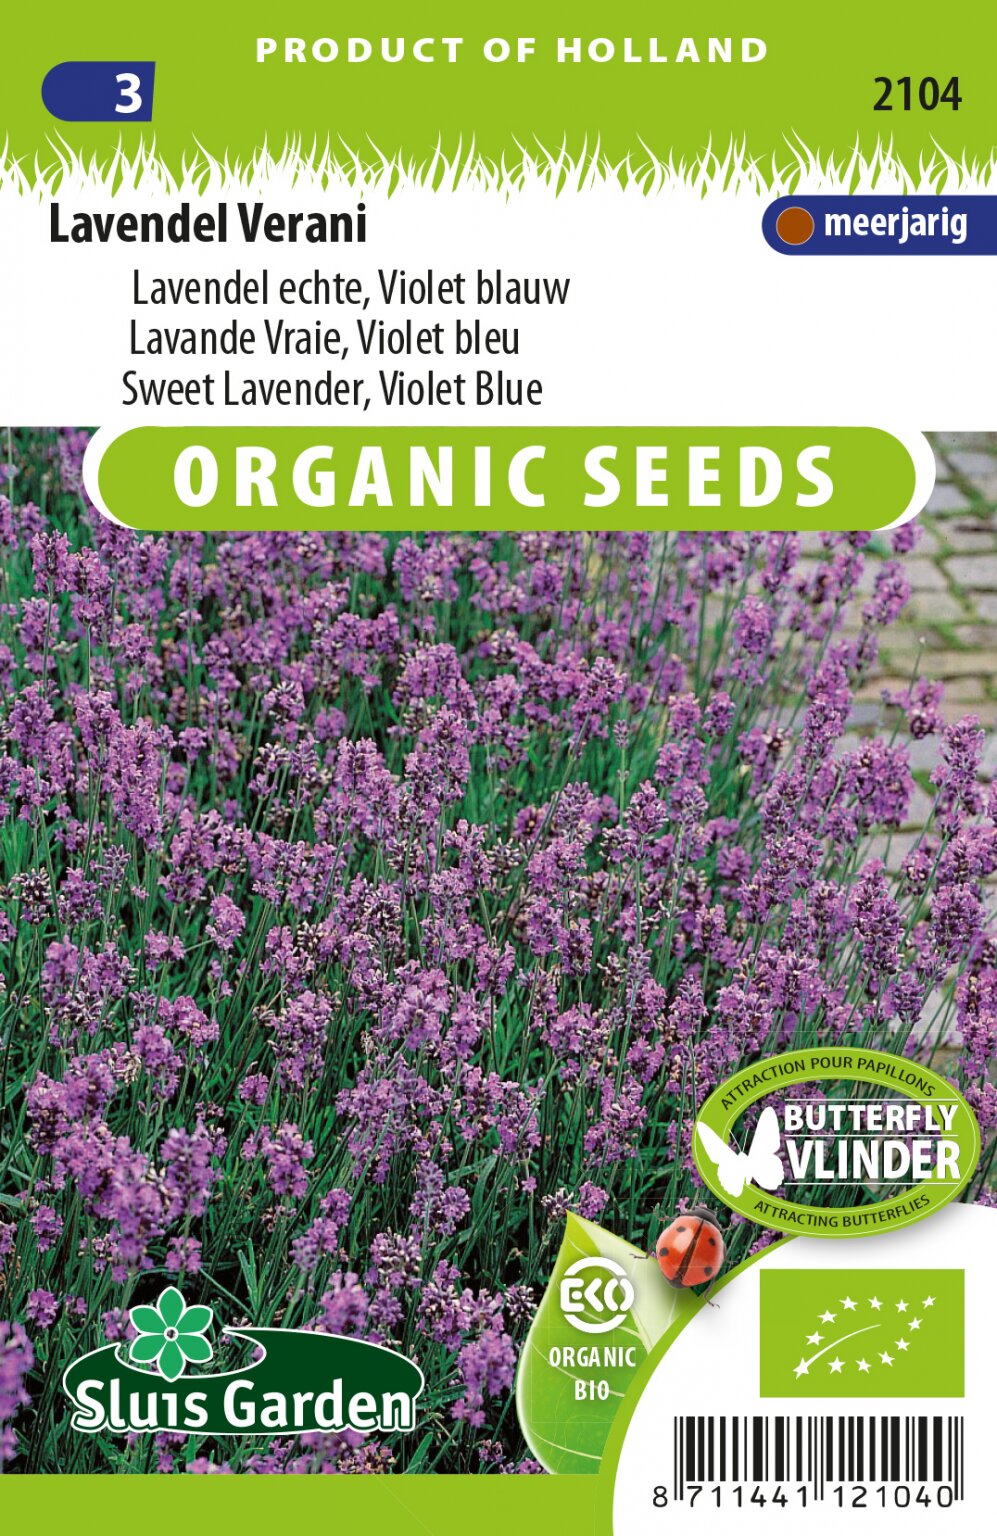 koop goedkoop lavendel zaad bij Tuingoedkoop.nl - Het grootste online tuincentrum met zowel én Planten.